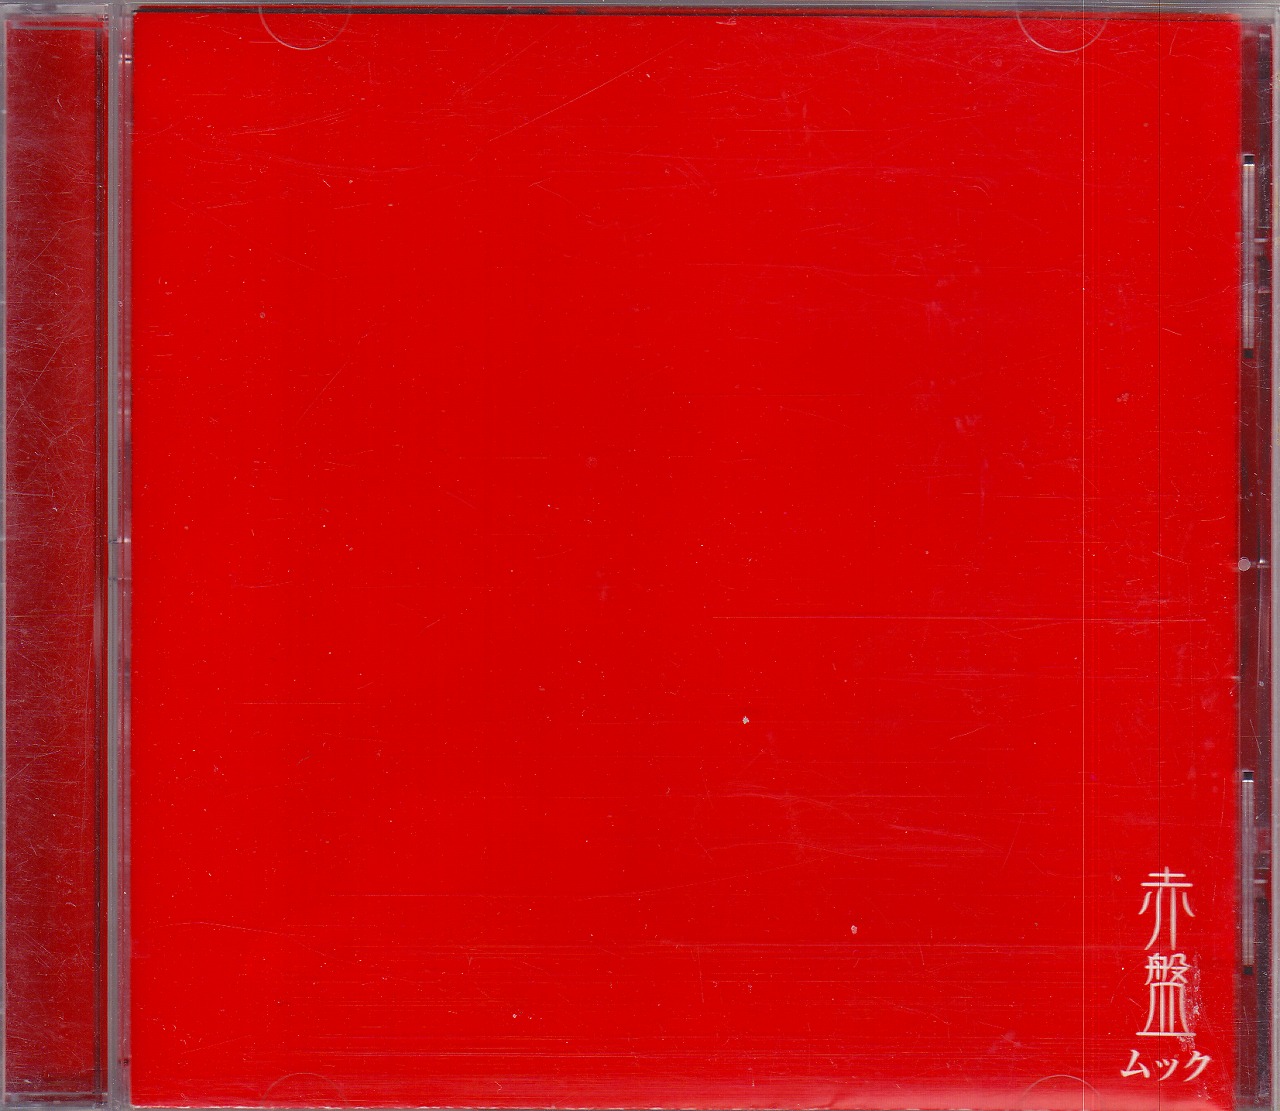 ムック の CD 【通常盤】赤盤